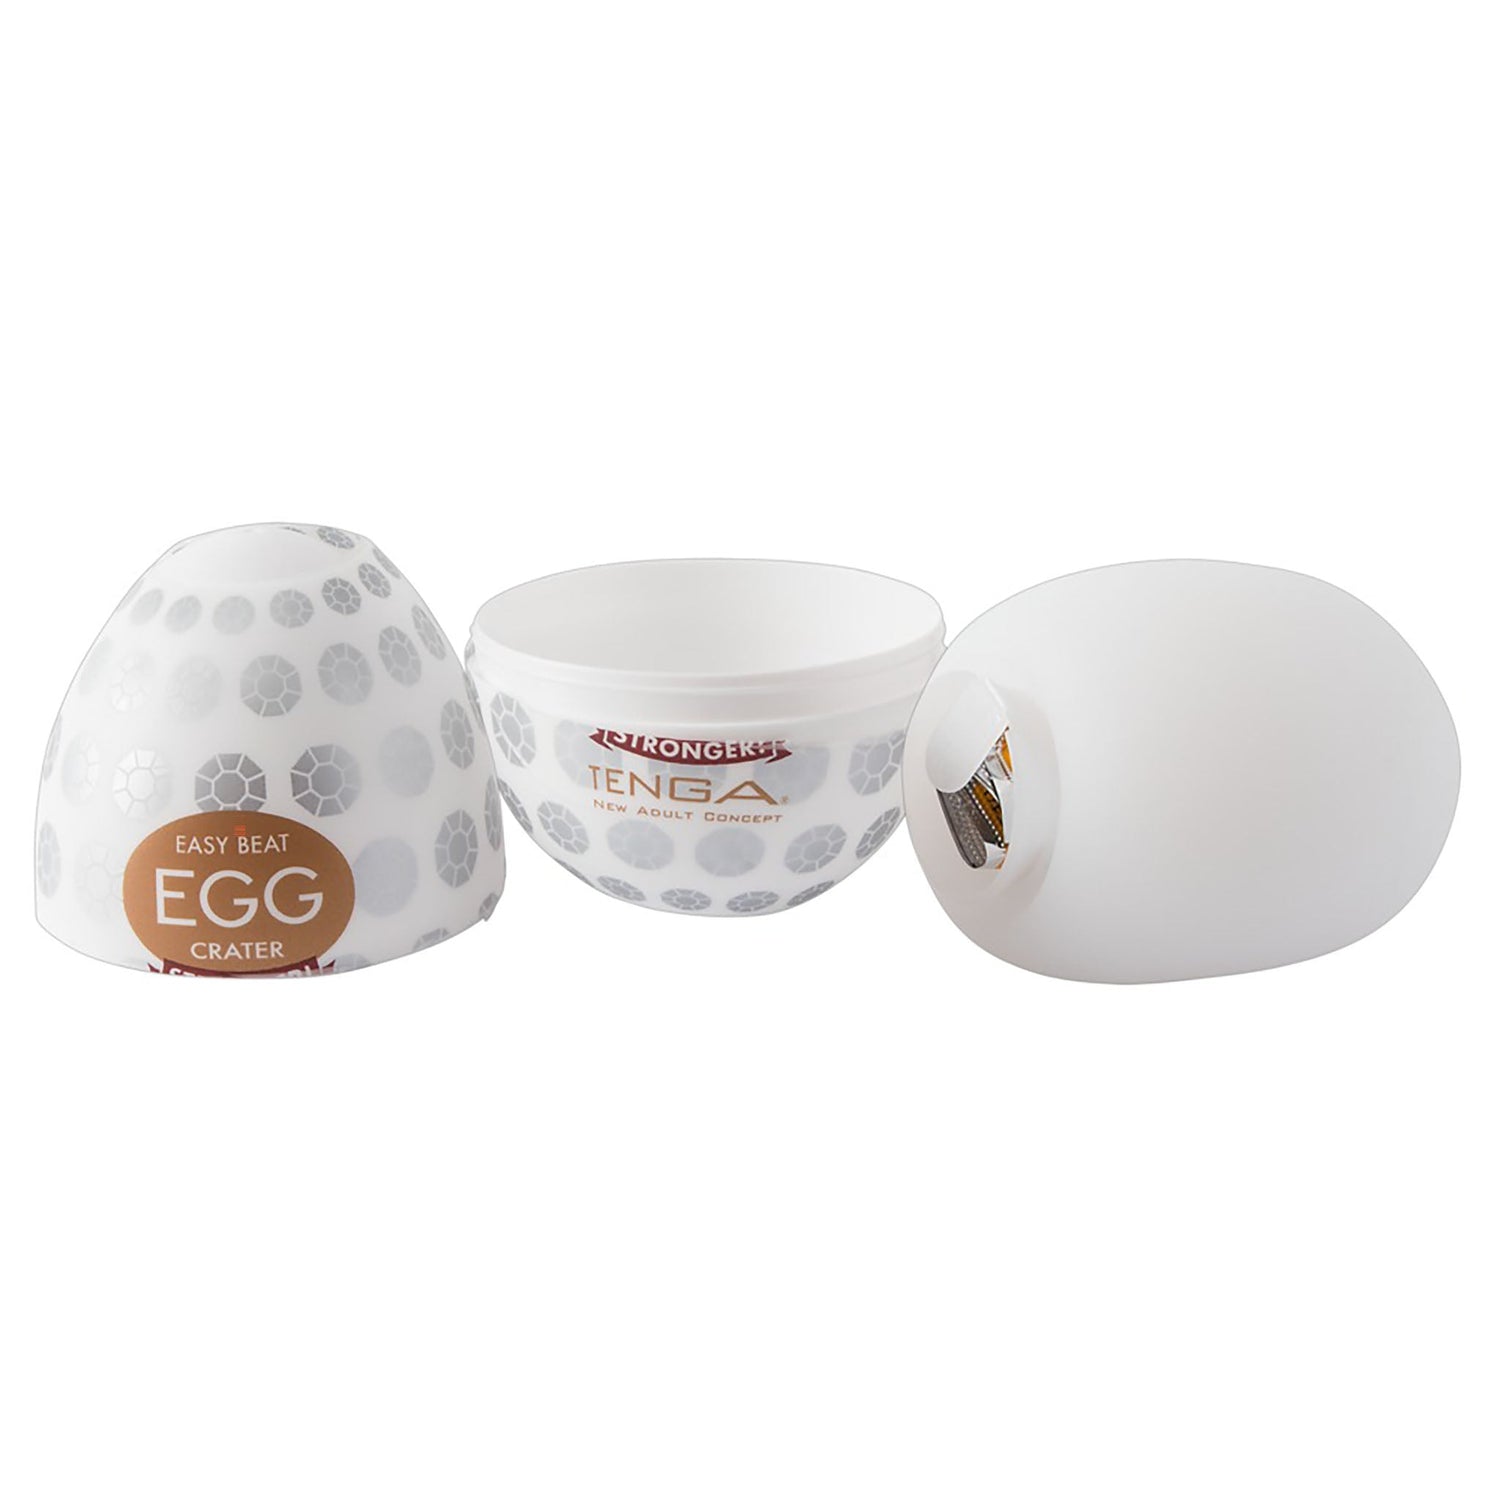 Tenga Egg Variety 2 6er Pack Eier, easy beat egg couldy, stronger! Detail